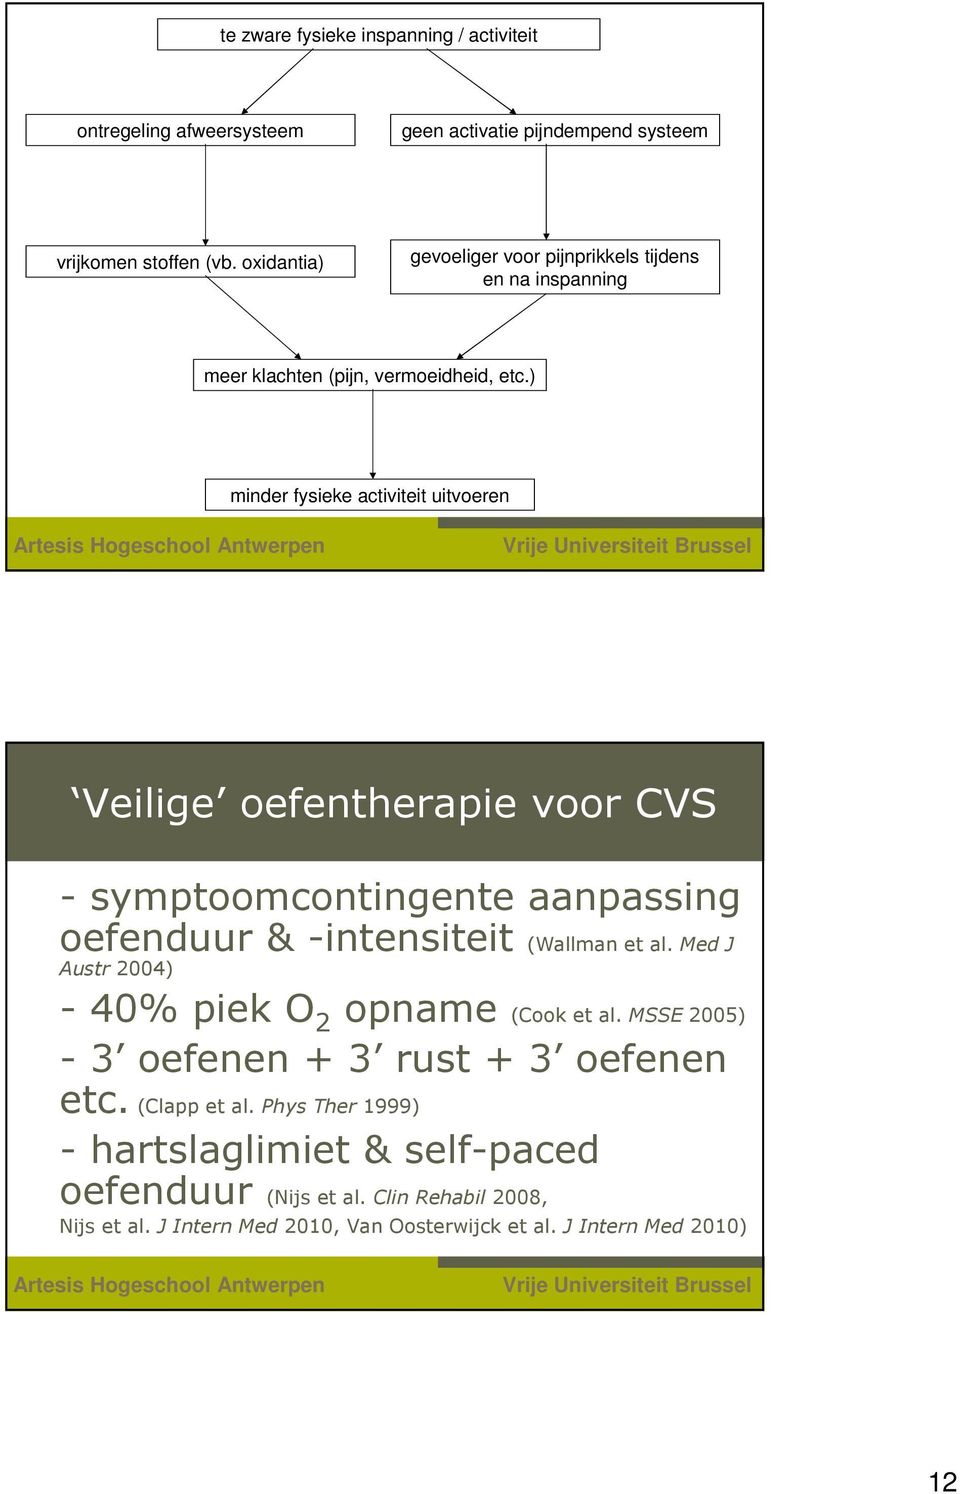 23 Antwerpen Veilige oefentherapie voor CVS - symptoomcontingente aanpassing oefenduur & -intensiteit (Wallman et al. Med J Austr 2004) - 40% piek O 2 opname (Cook et al.